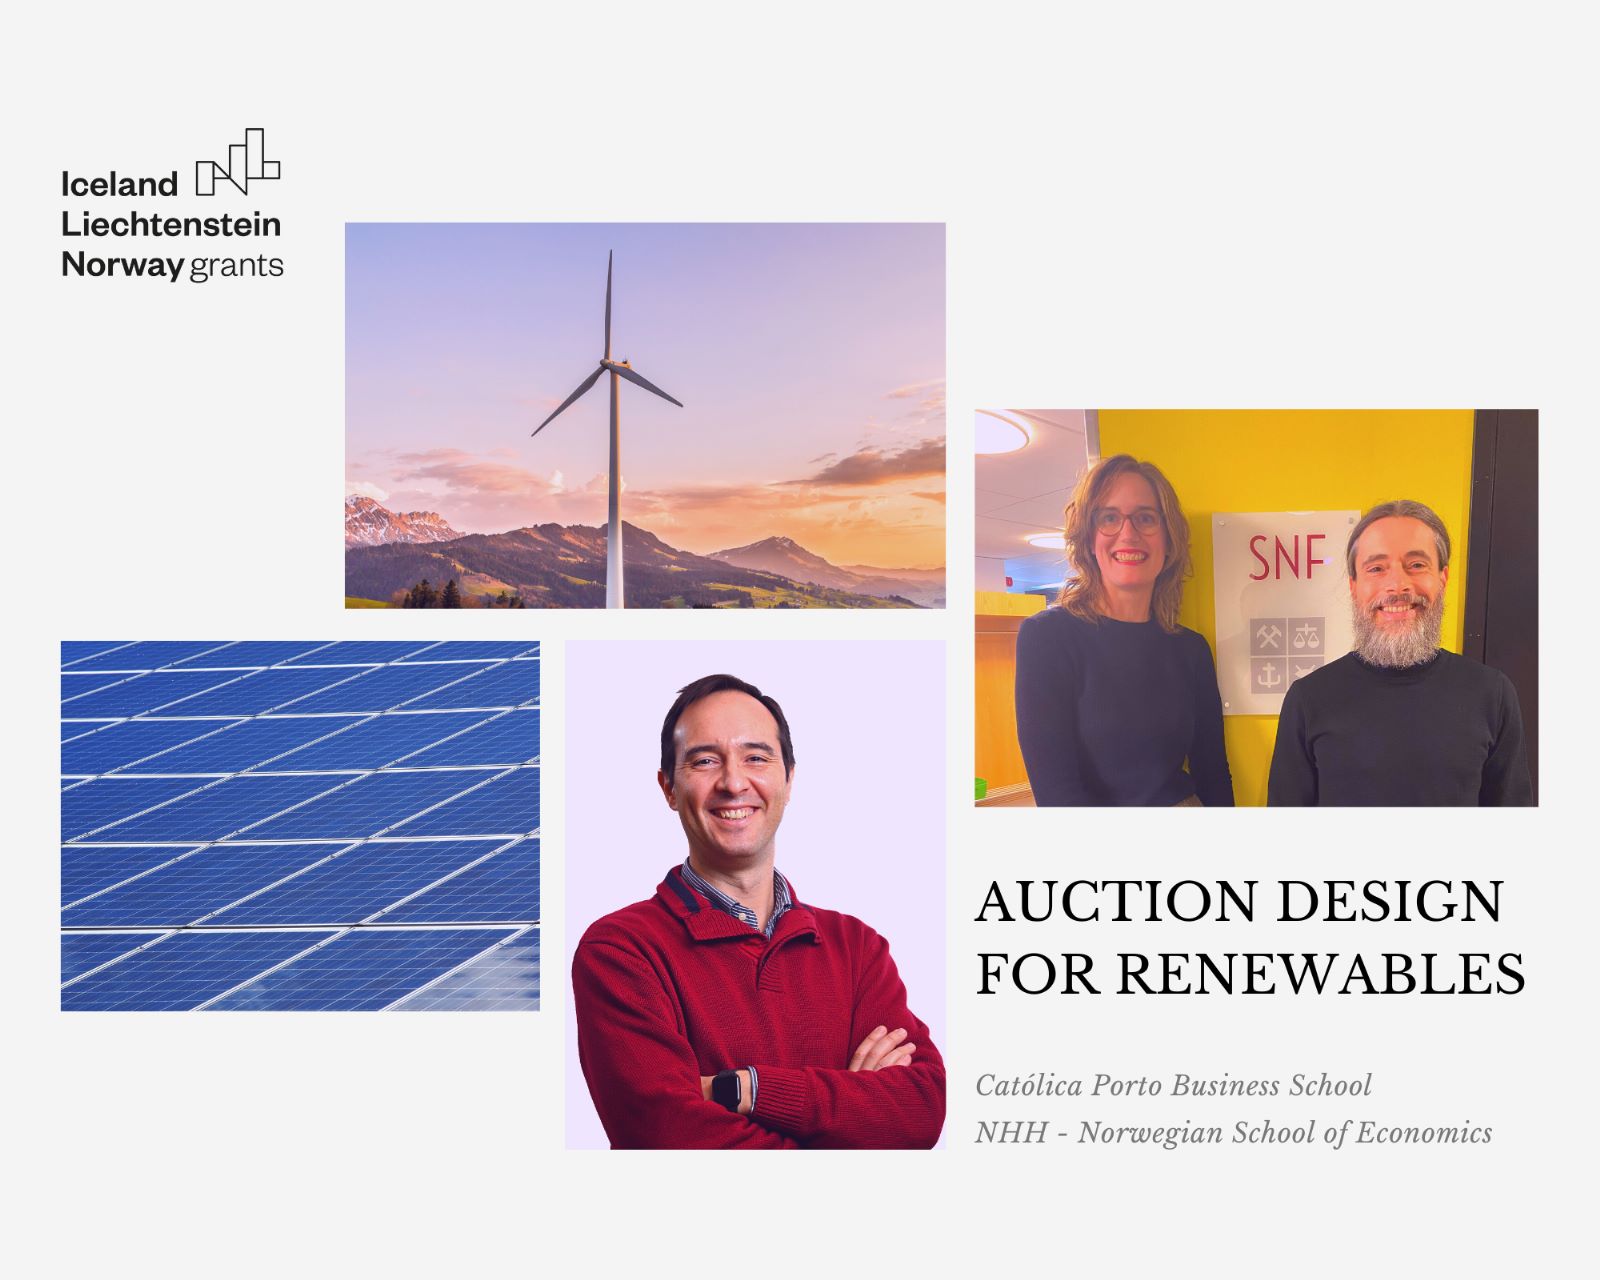 Auction Design for renewables